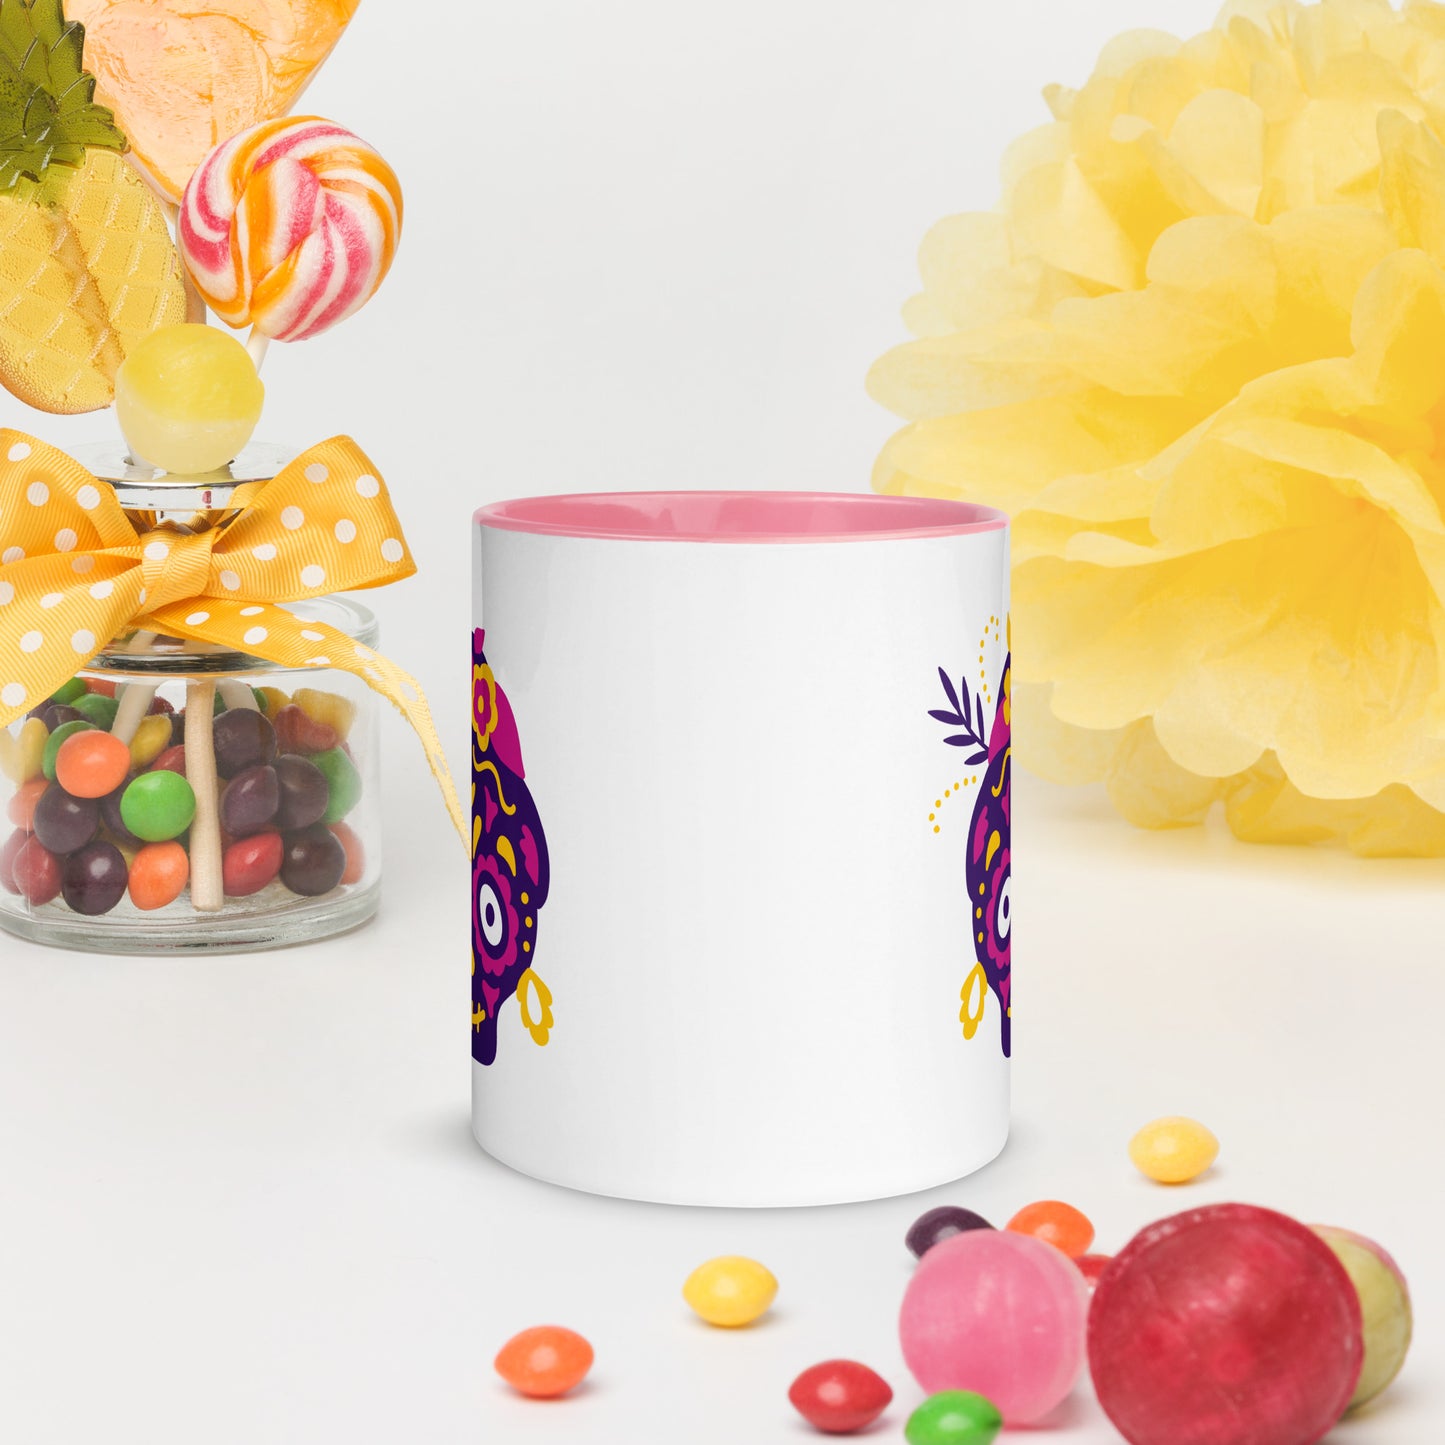 Calavera ceramic mug with color inside